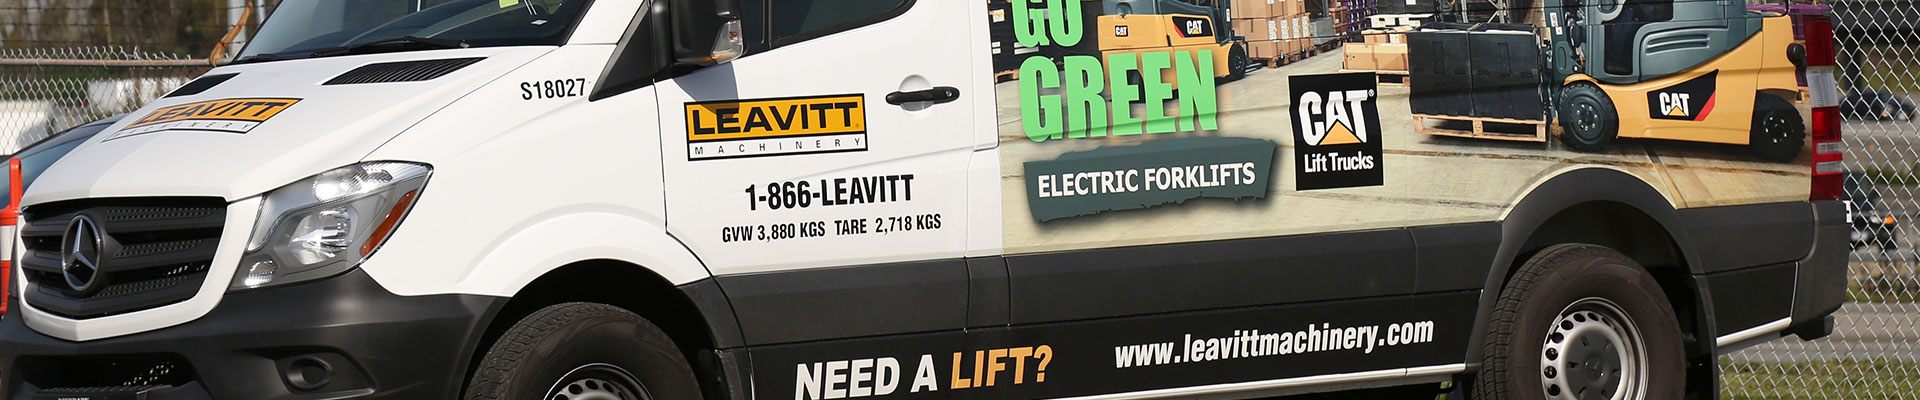 Leavitt Mobile service truck